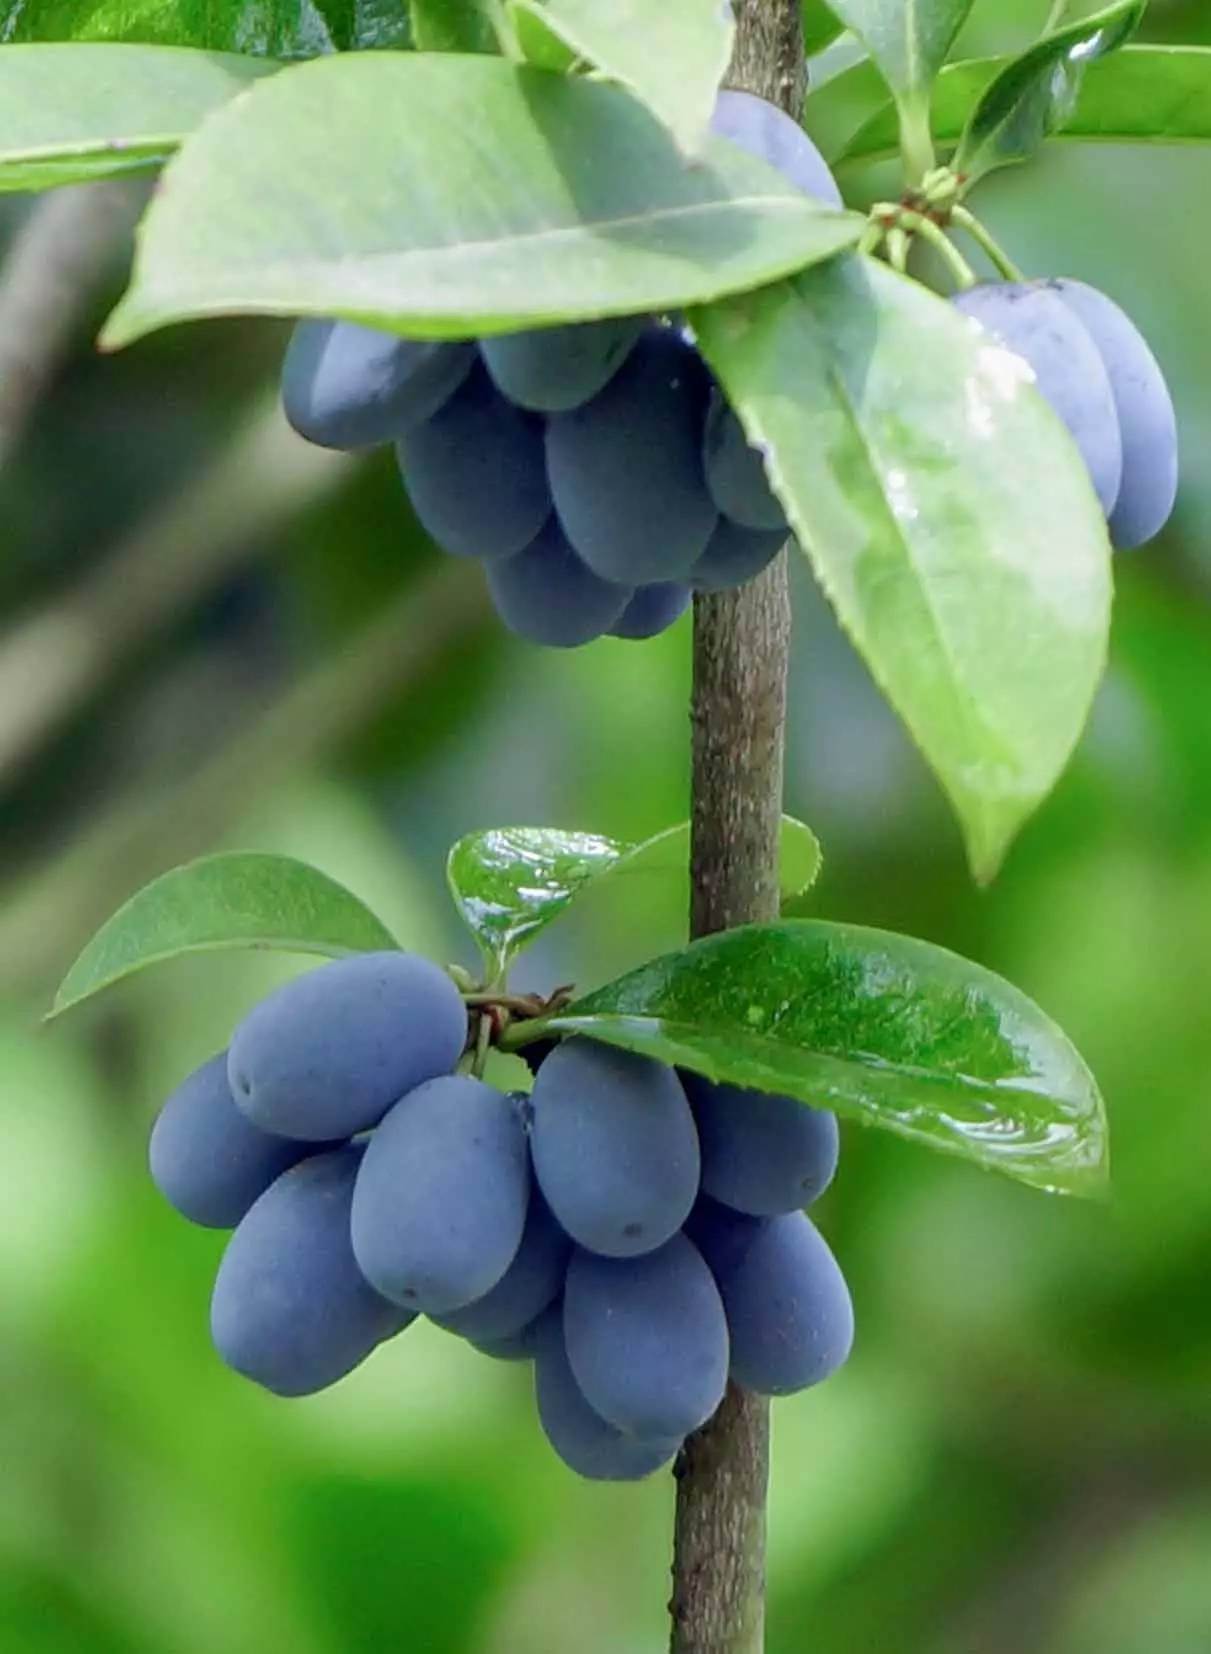 充分Jabuticaba或Jaboticaba树紫色黑果子 库存照片 - 图片 包括有 生气勃勃, 新鲜: 115613108